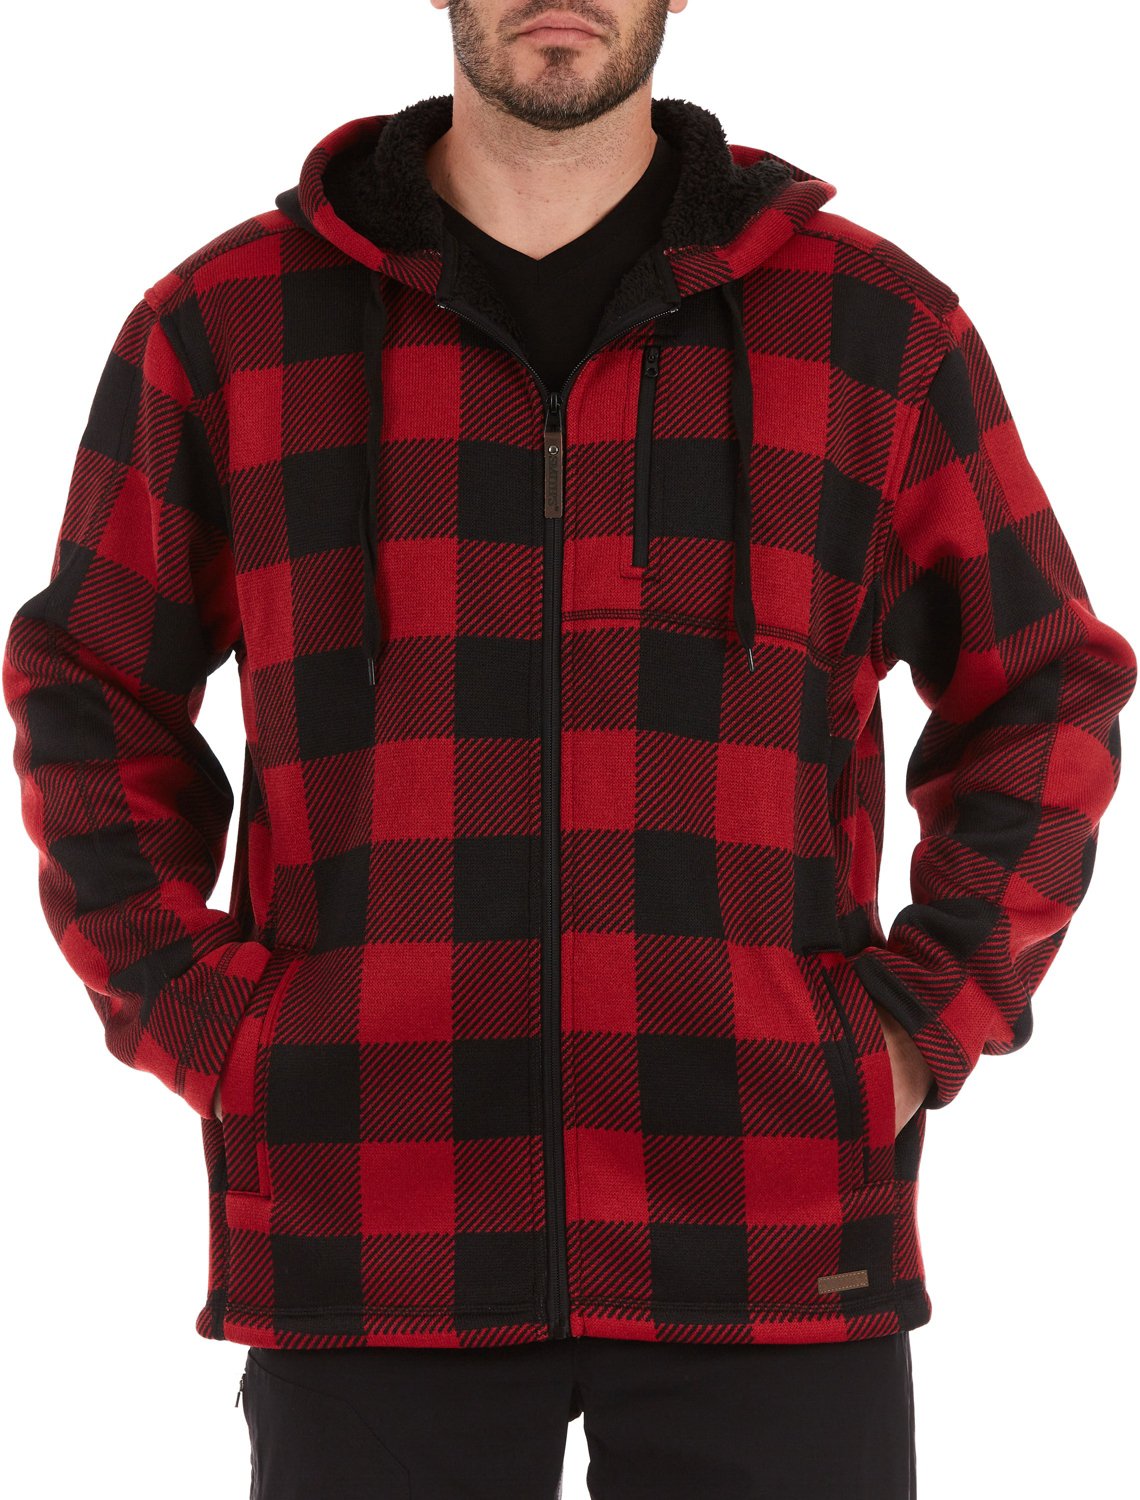 Smiths Workwear Mens Buffalo Sweater Fleece Hooded Jacket